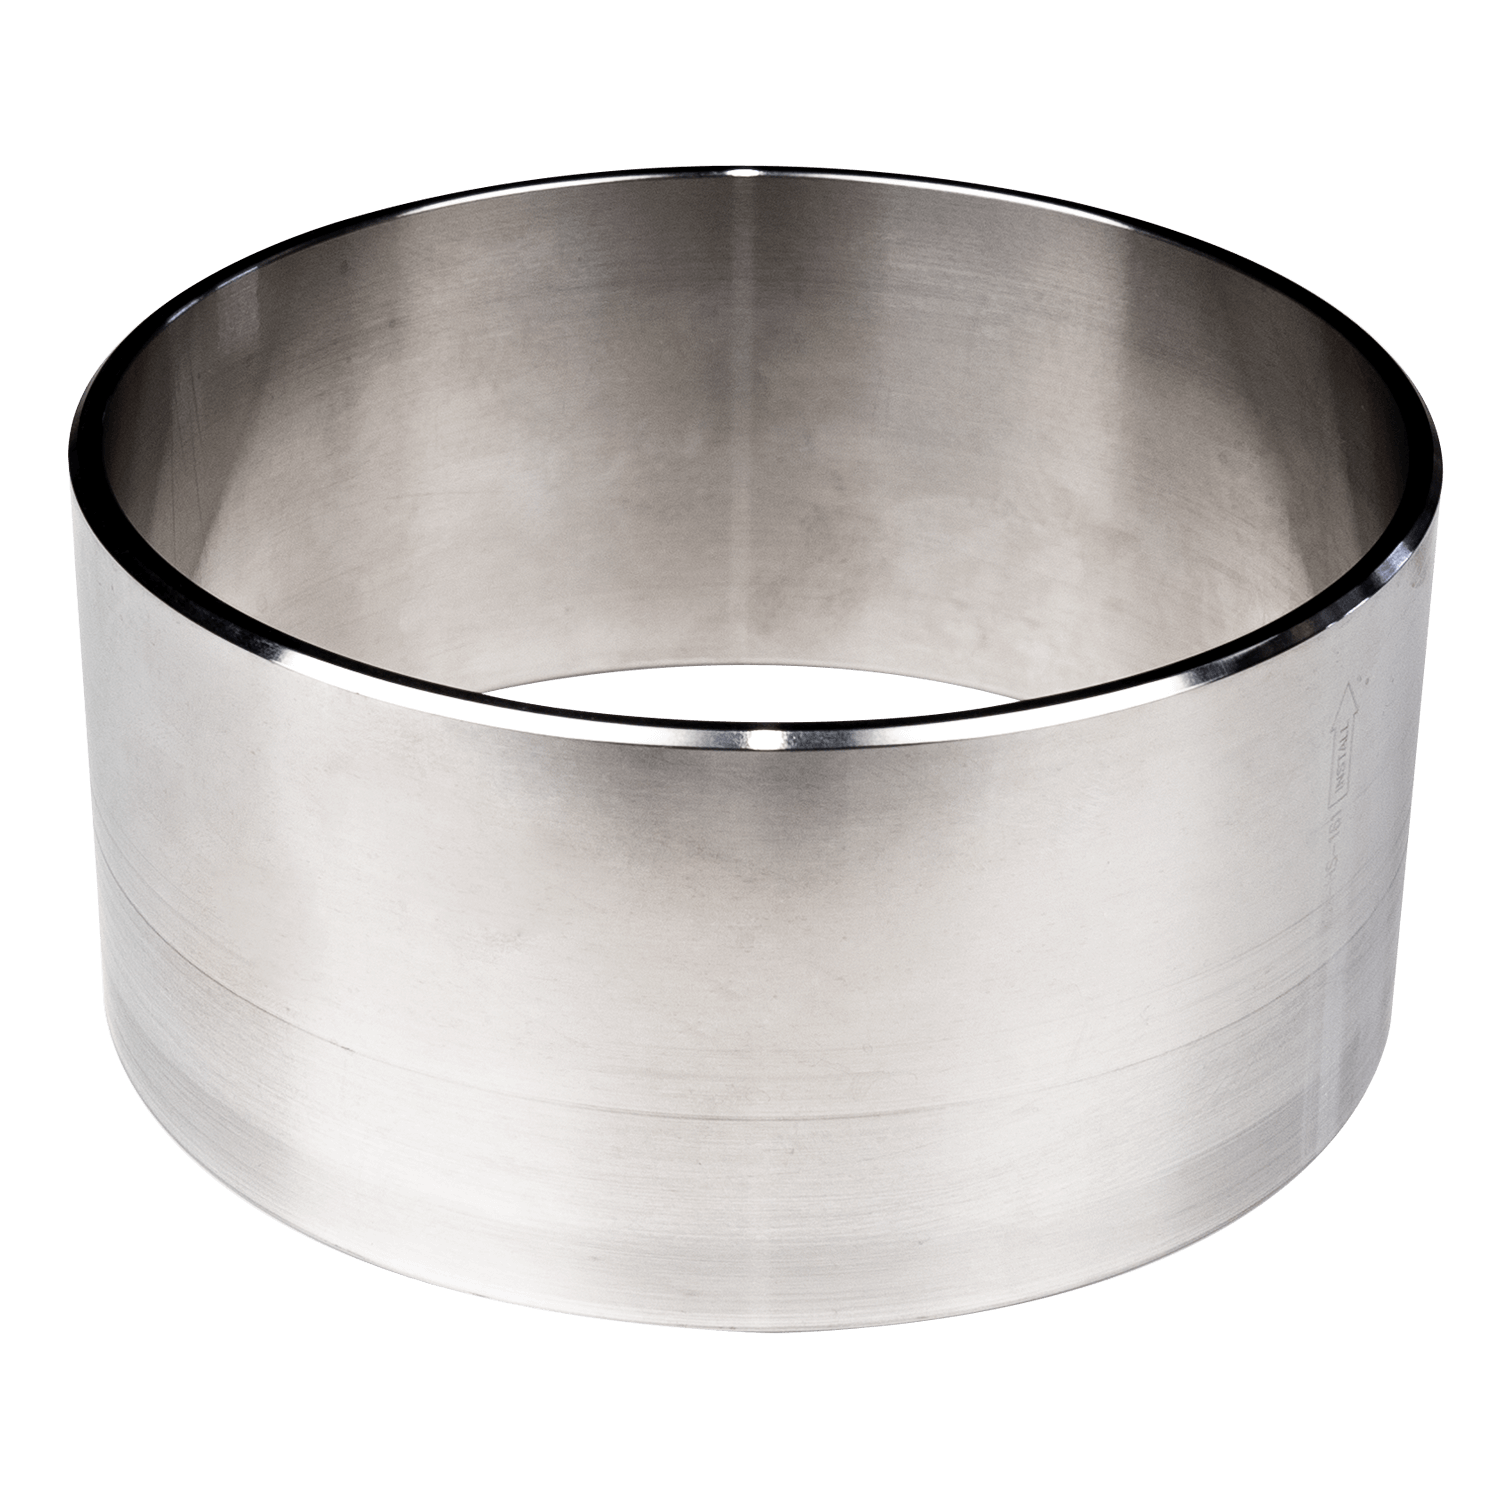 Solas Seadoo 161mm Stainless Steel Wear Ring/Pump Liner